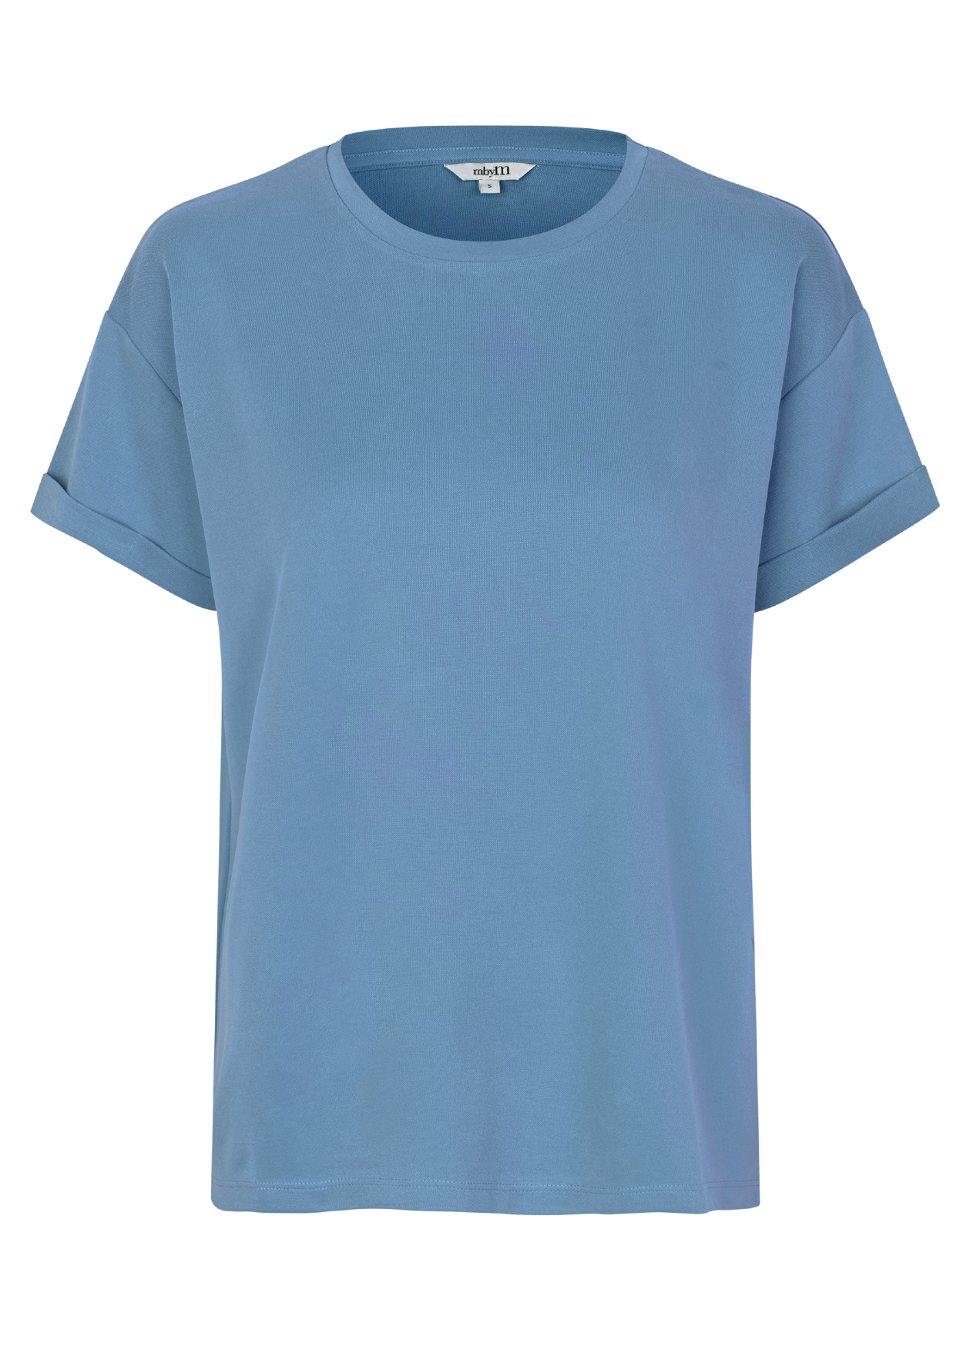 Lichtblauw T-Shirt Amana I Wij zijn fan van de basics van mbyM. Zoals dit mooie lichtblauwe T-shirt Amana met omgeslagen mouwen. Het lichtblauwe Amana shirt gemaakt van heerlijk zachte duurzame stof heeft een ronde hals en valt losjes. Shop de nieuwe collectie dames T-shirts, basic shirts, mbyM T-shirts in kleuren.